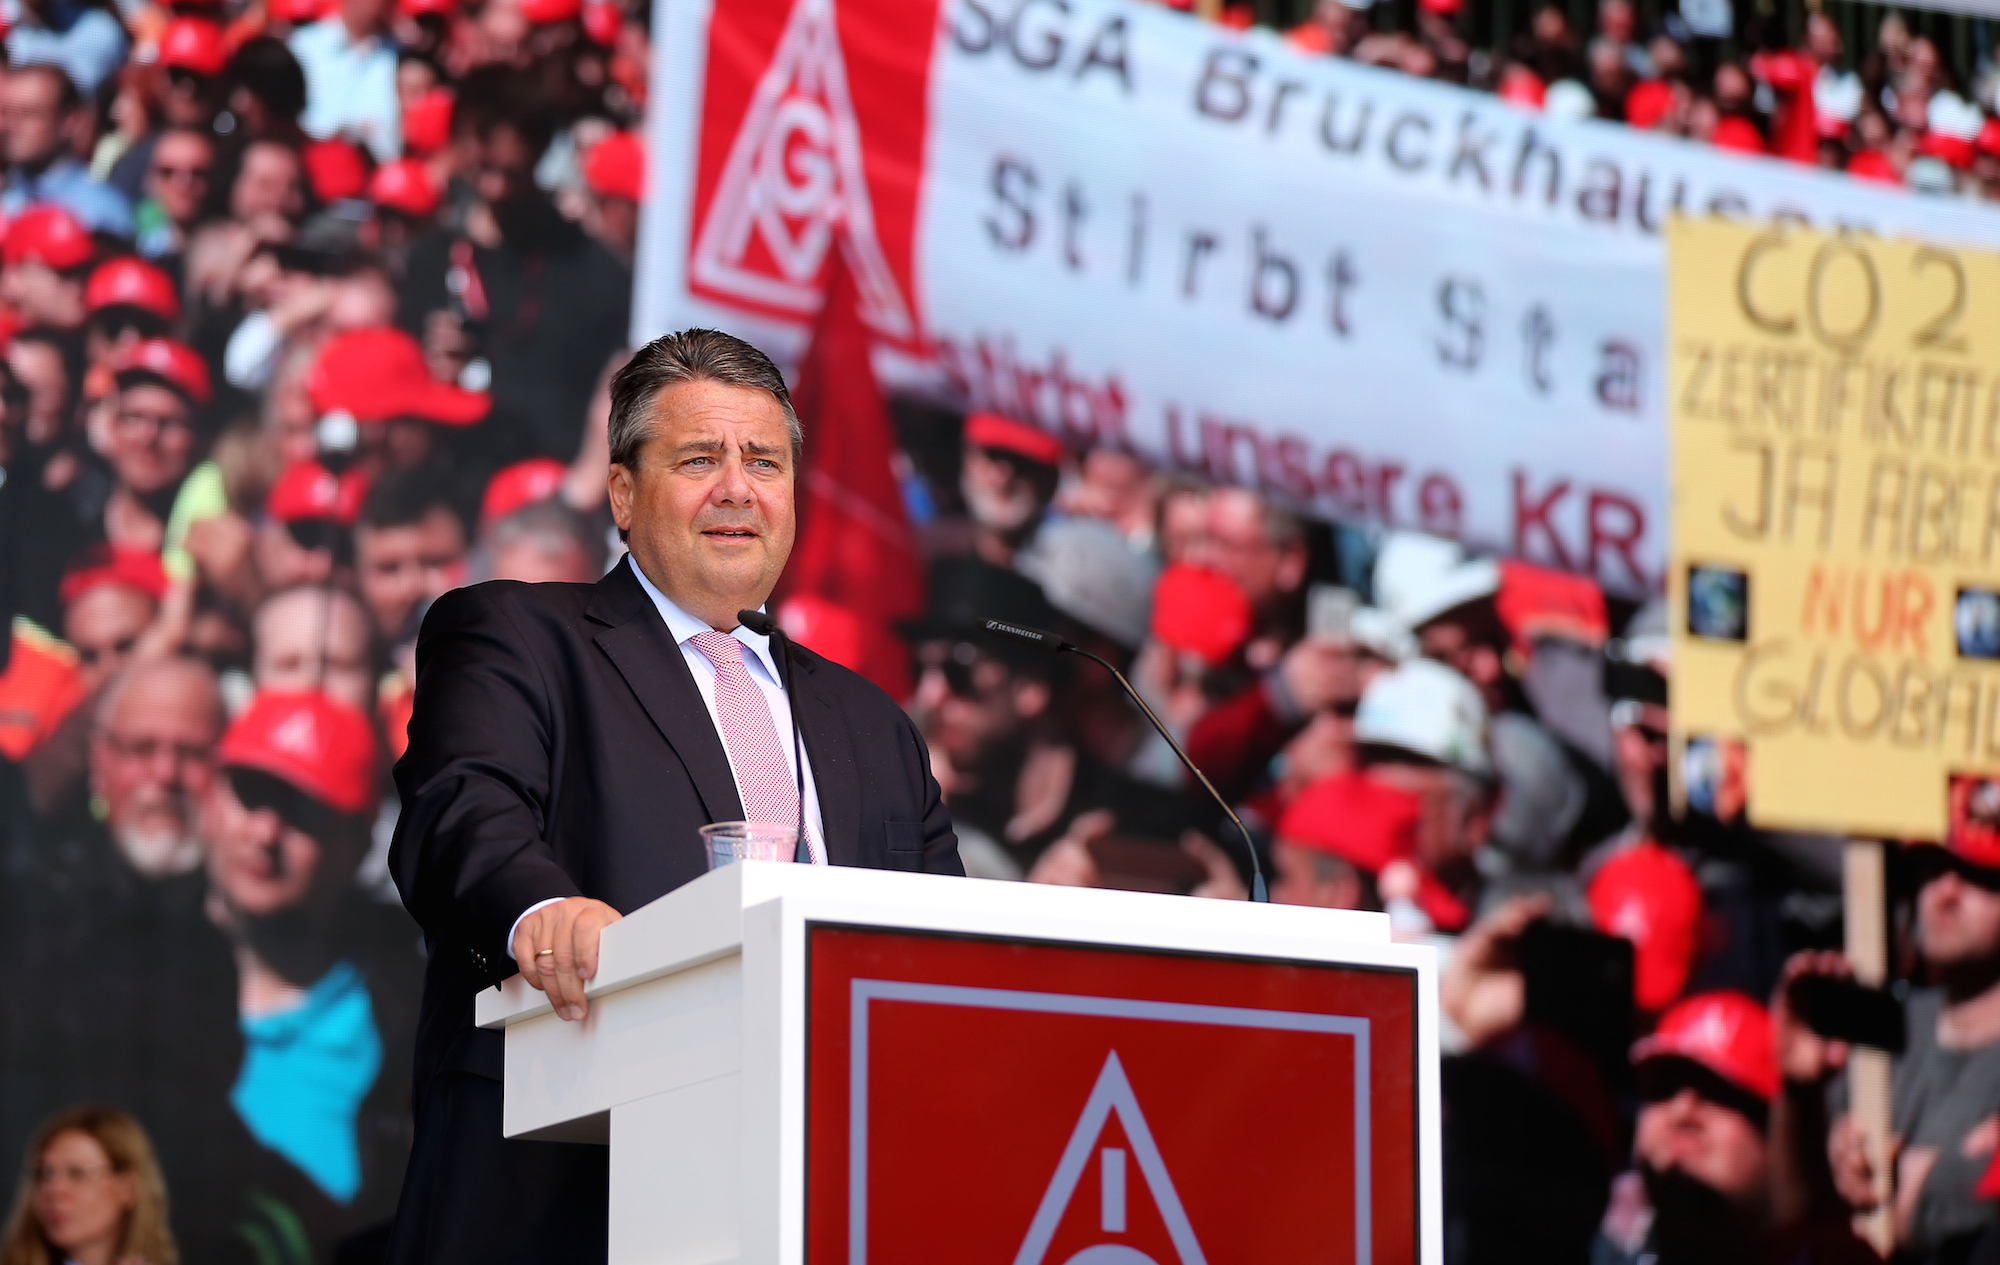 Foto: Sigmar Gabriel spricht in Duisburg auf der Kundgebung der Stahlarbeiter. 